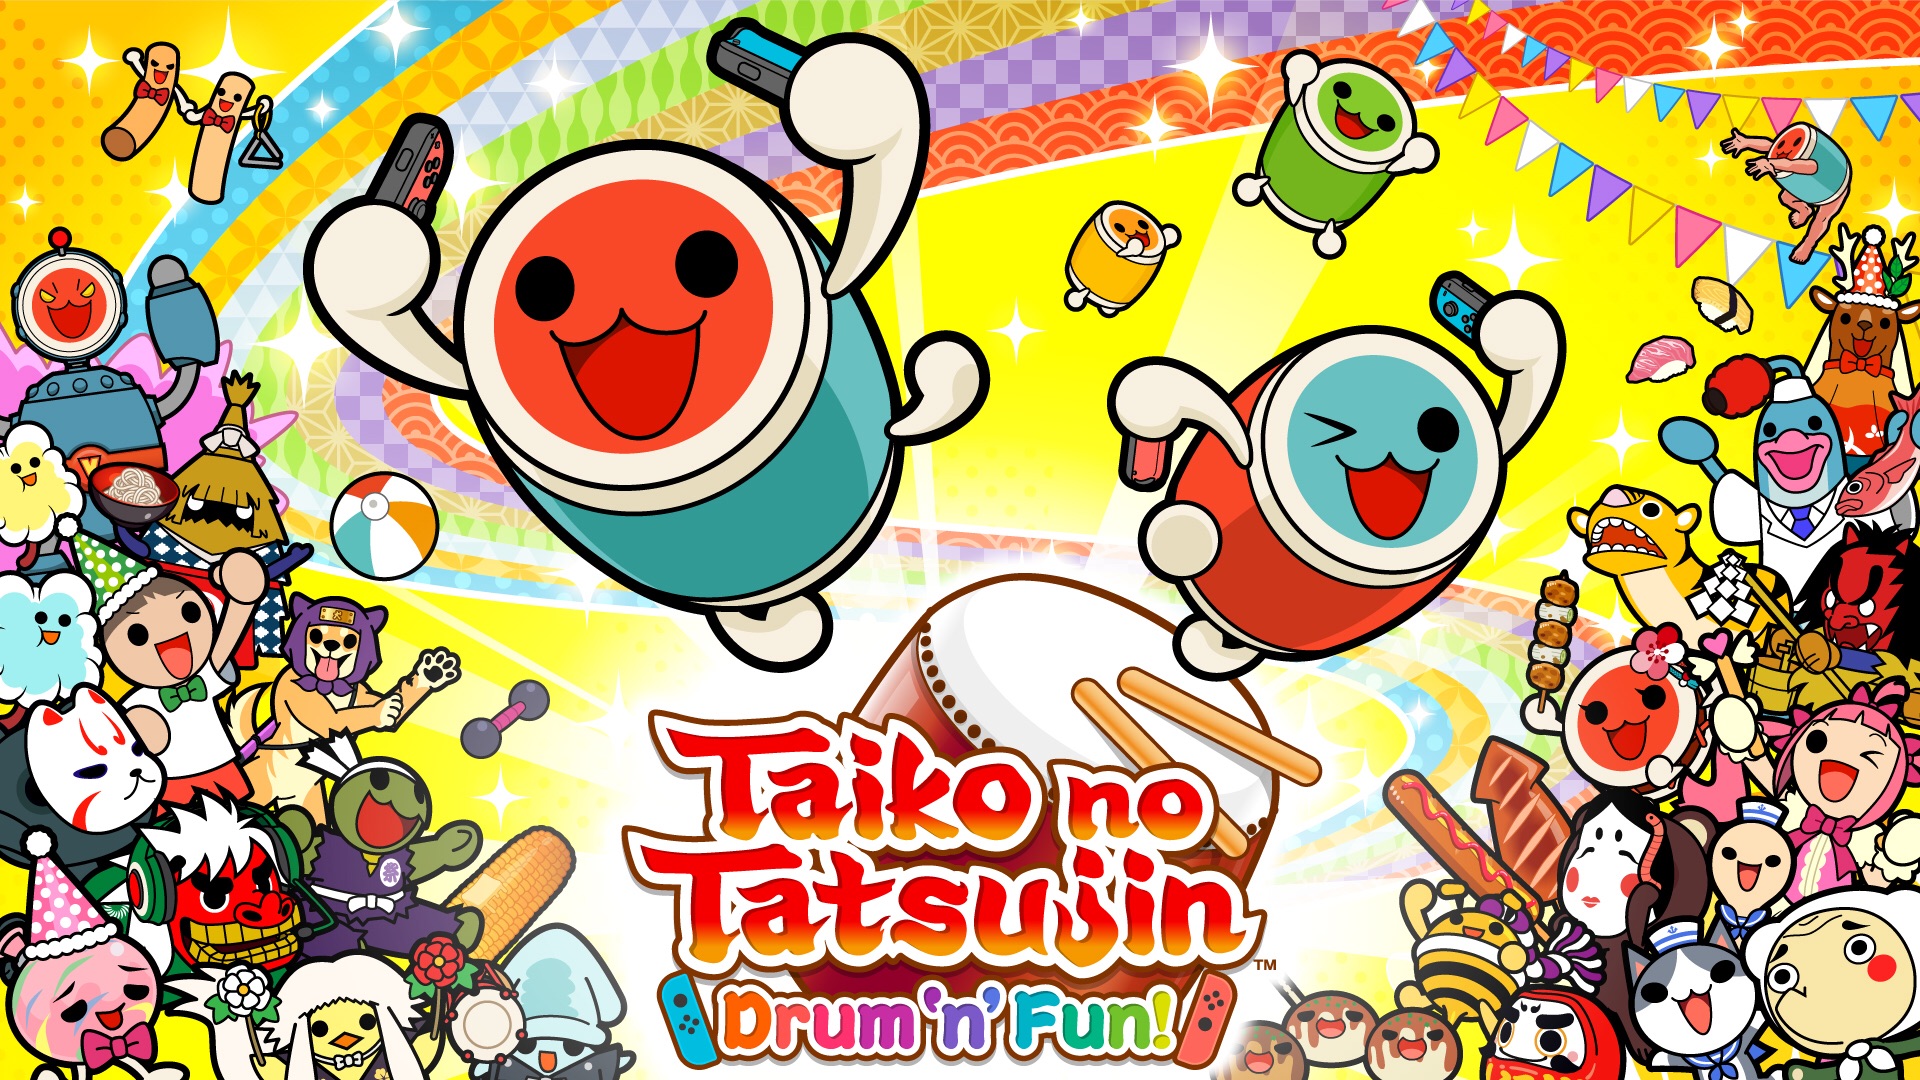 太鼓达人Taiko no Tatsujin: Drum 'n' Fun! for Nintendo Switch - Nintendo Game Details